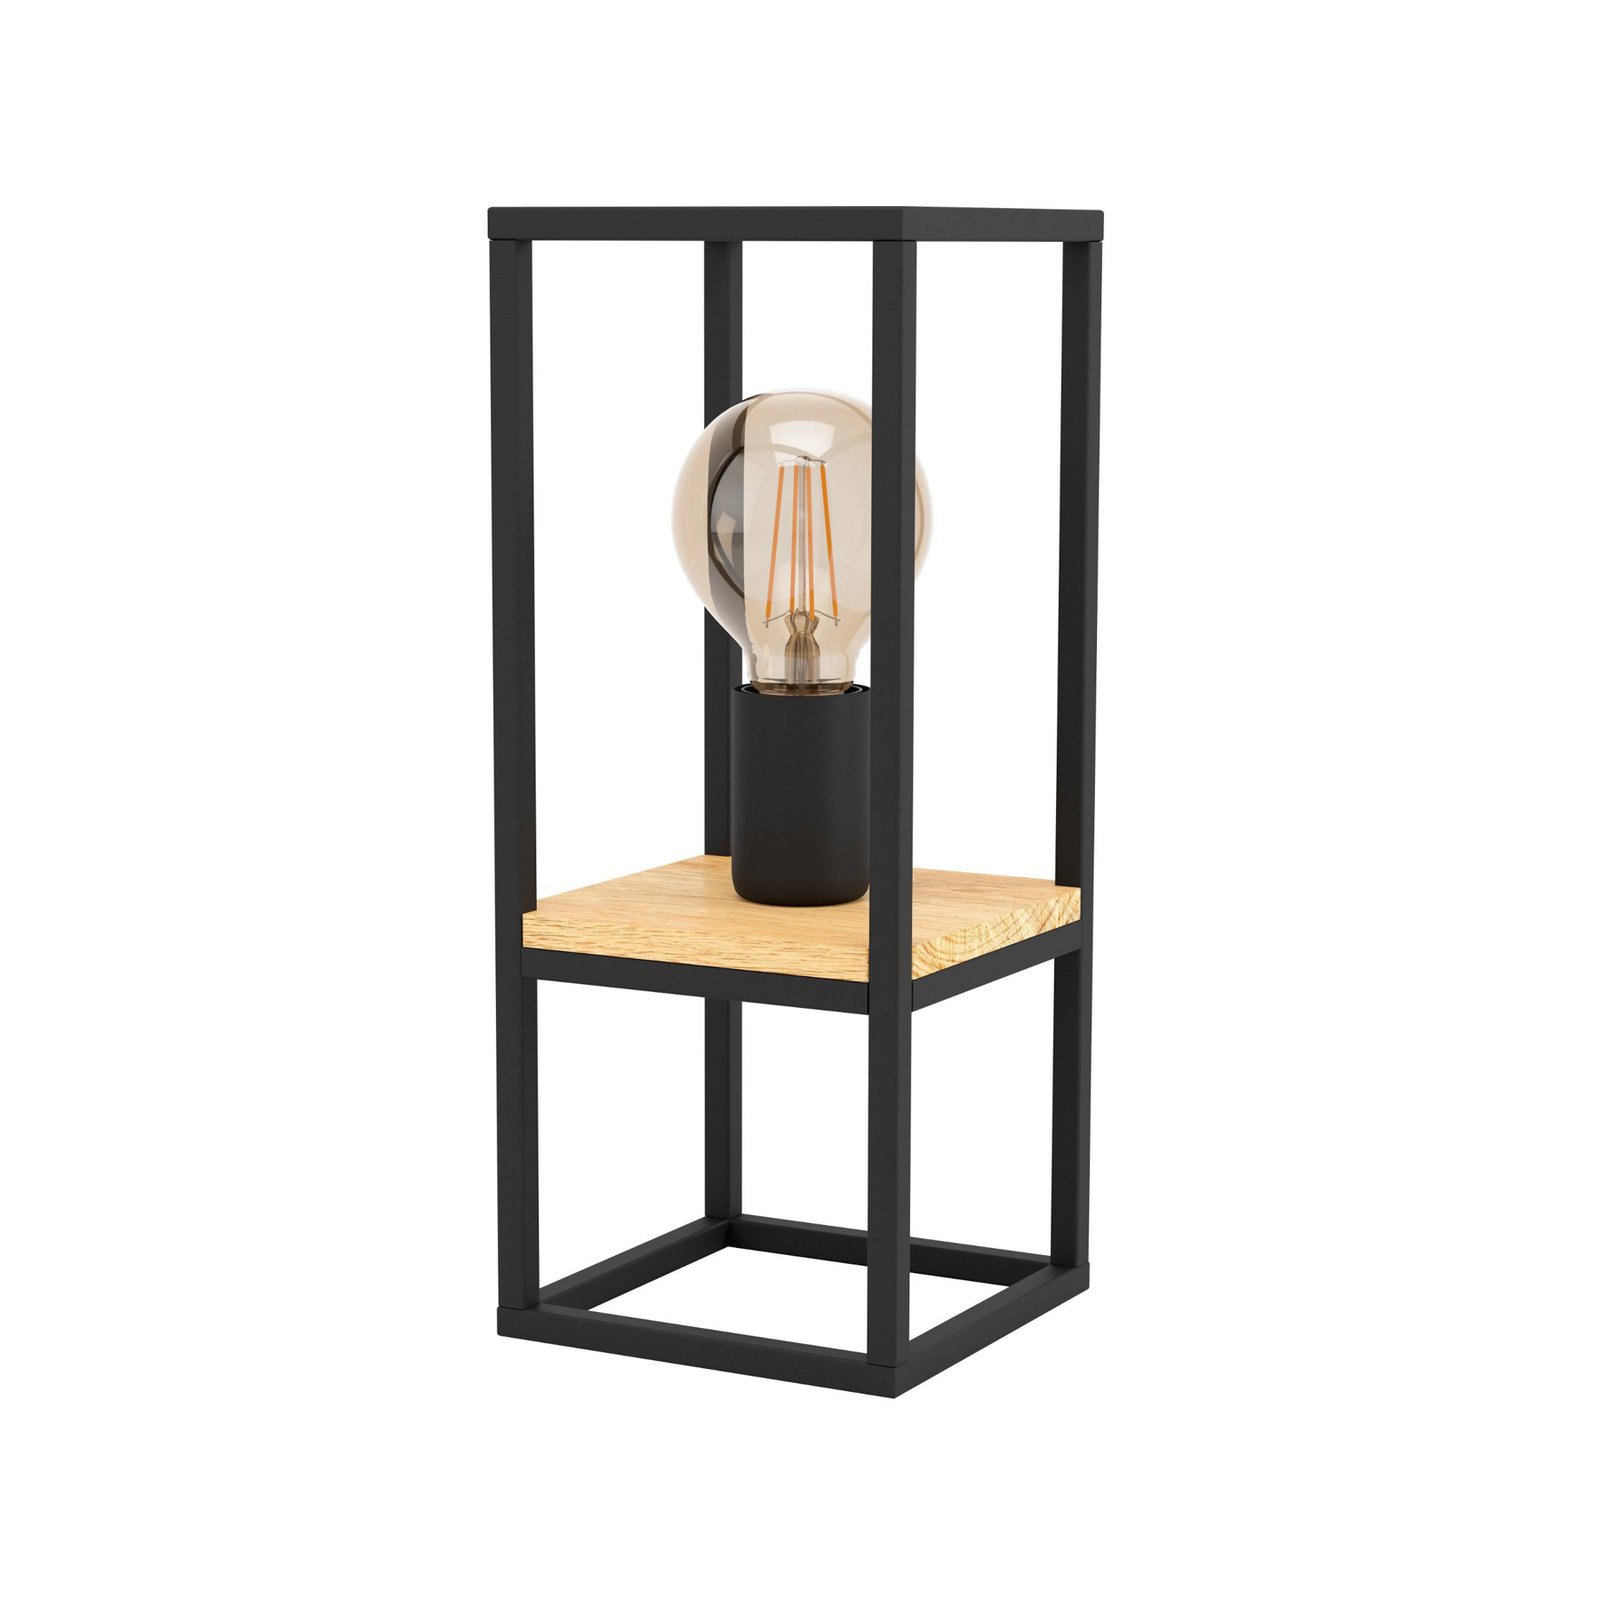 Επιτραπέζιο φωτιστικό Libertad, ύψος 35 cm, μαύρο/ξύλο, ατσάλι